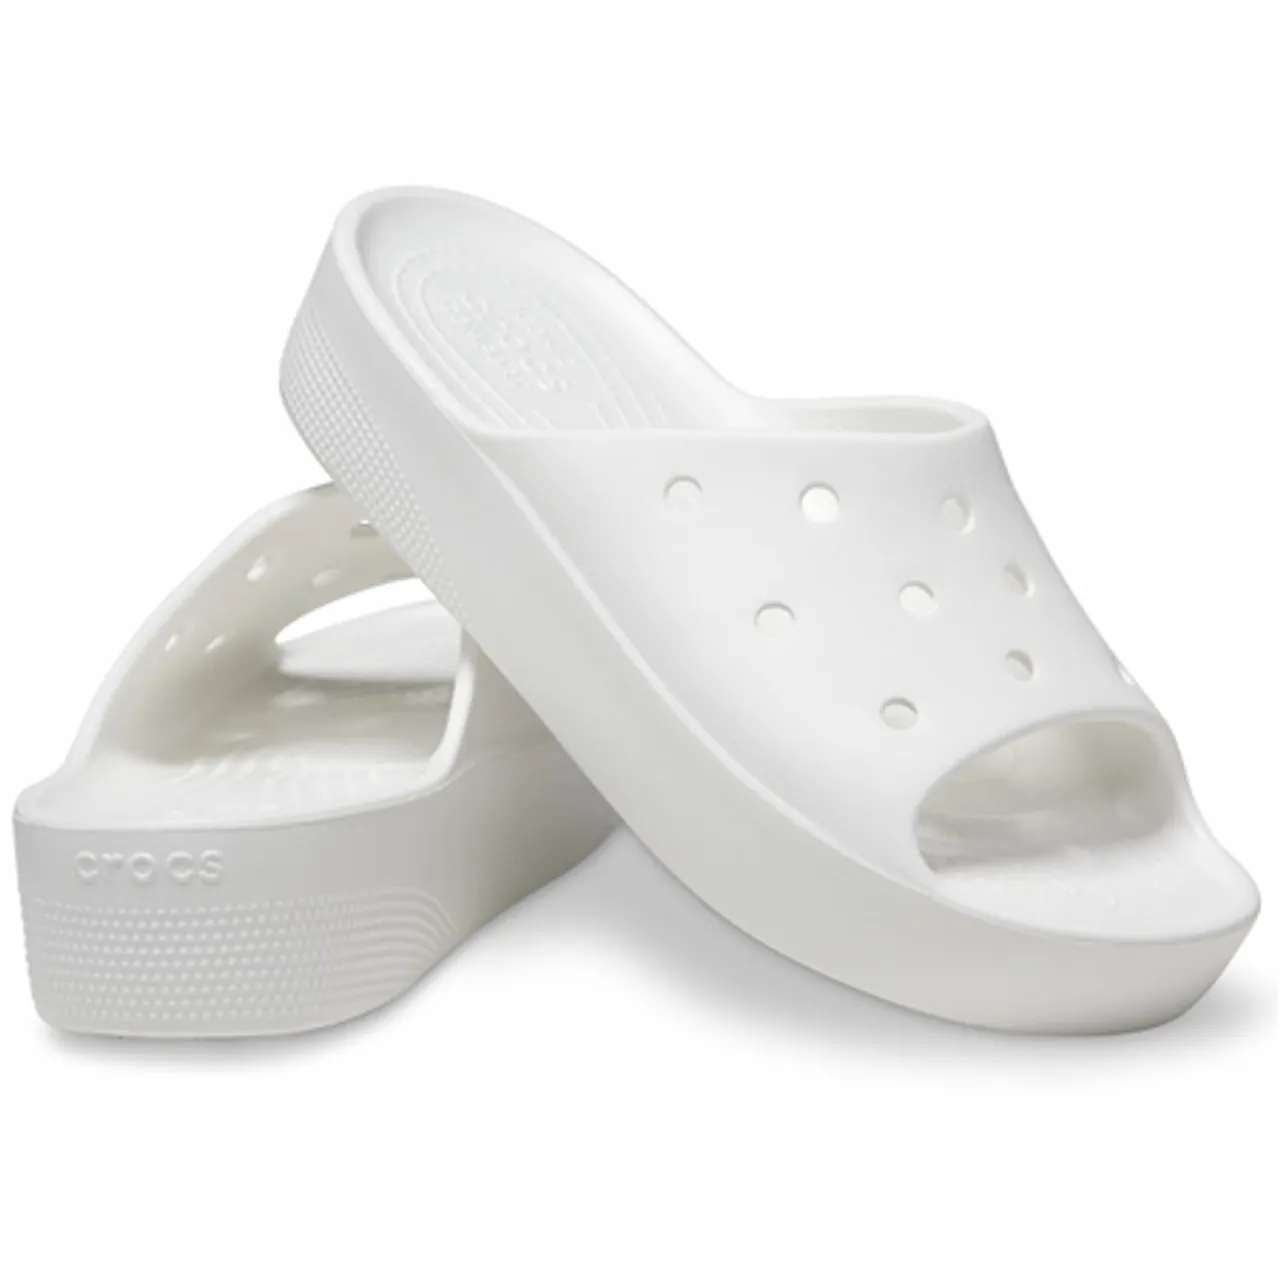 Crocs Classic Platform Sliders - White - UK 3 (EU 34-35)